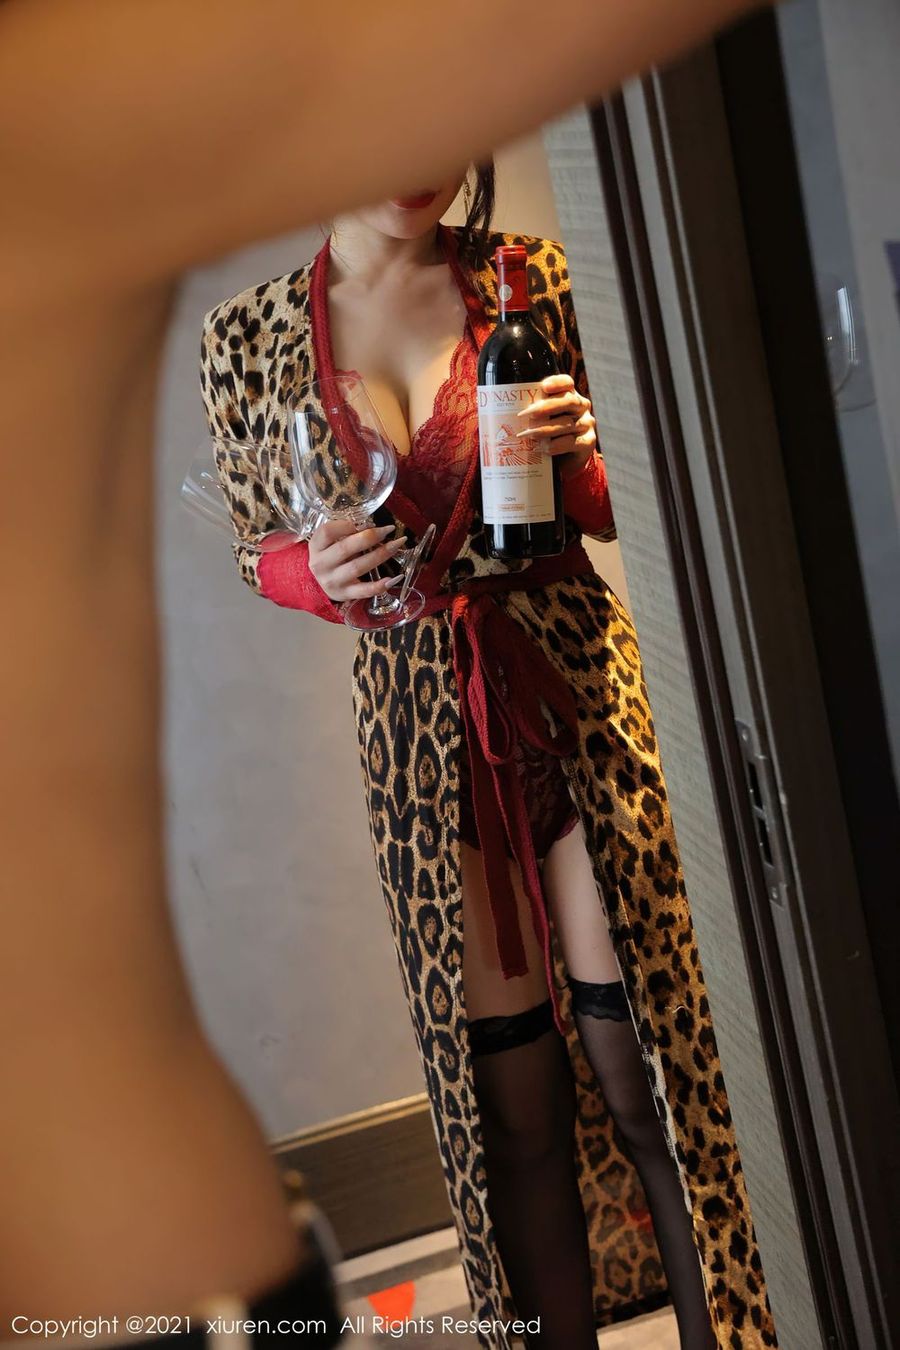 美女模特美七Mia黑丝美腿豹纹服饰红酒主题性感写真